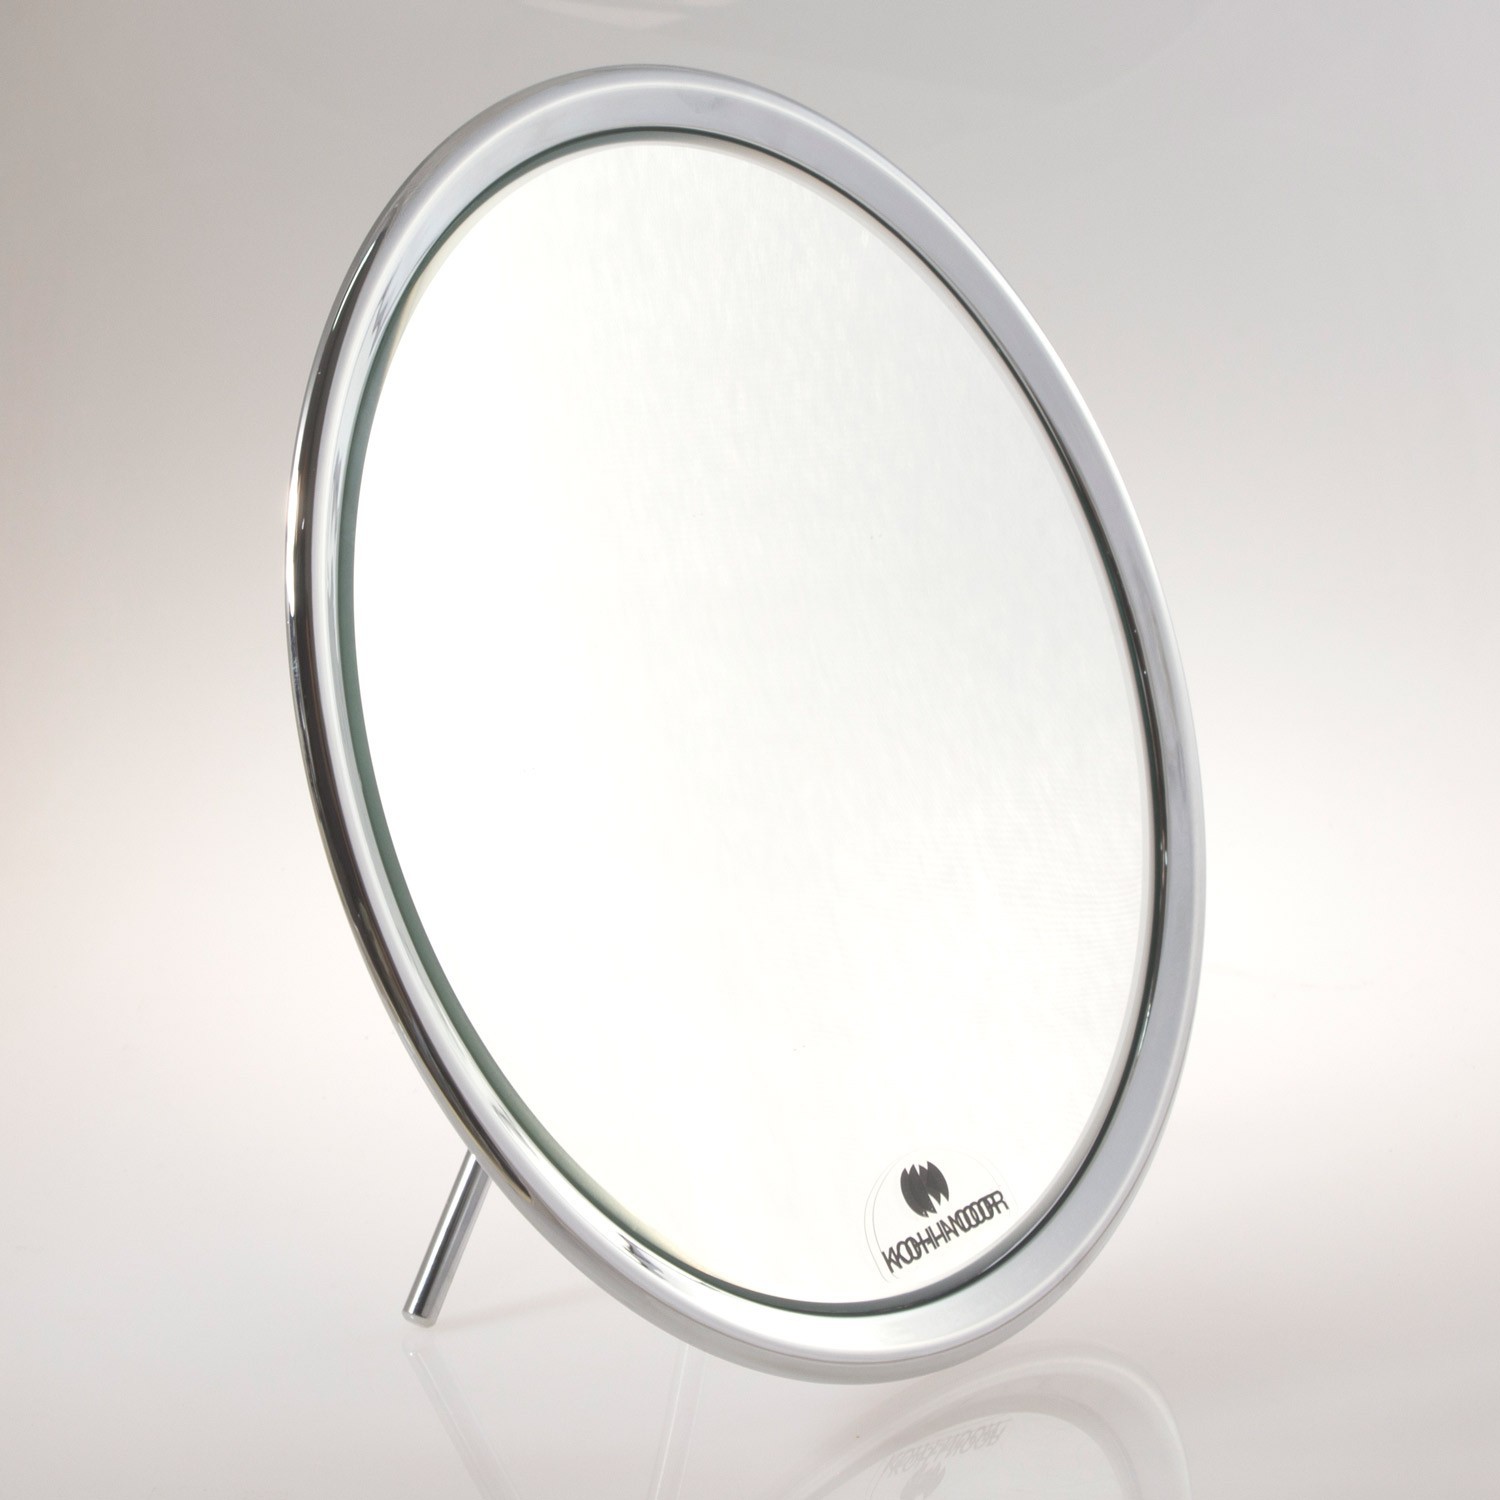 Specchio ingranditore da tavolo (Ingrandimento x3) cromato ø23cm.